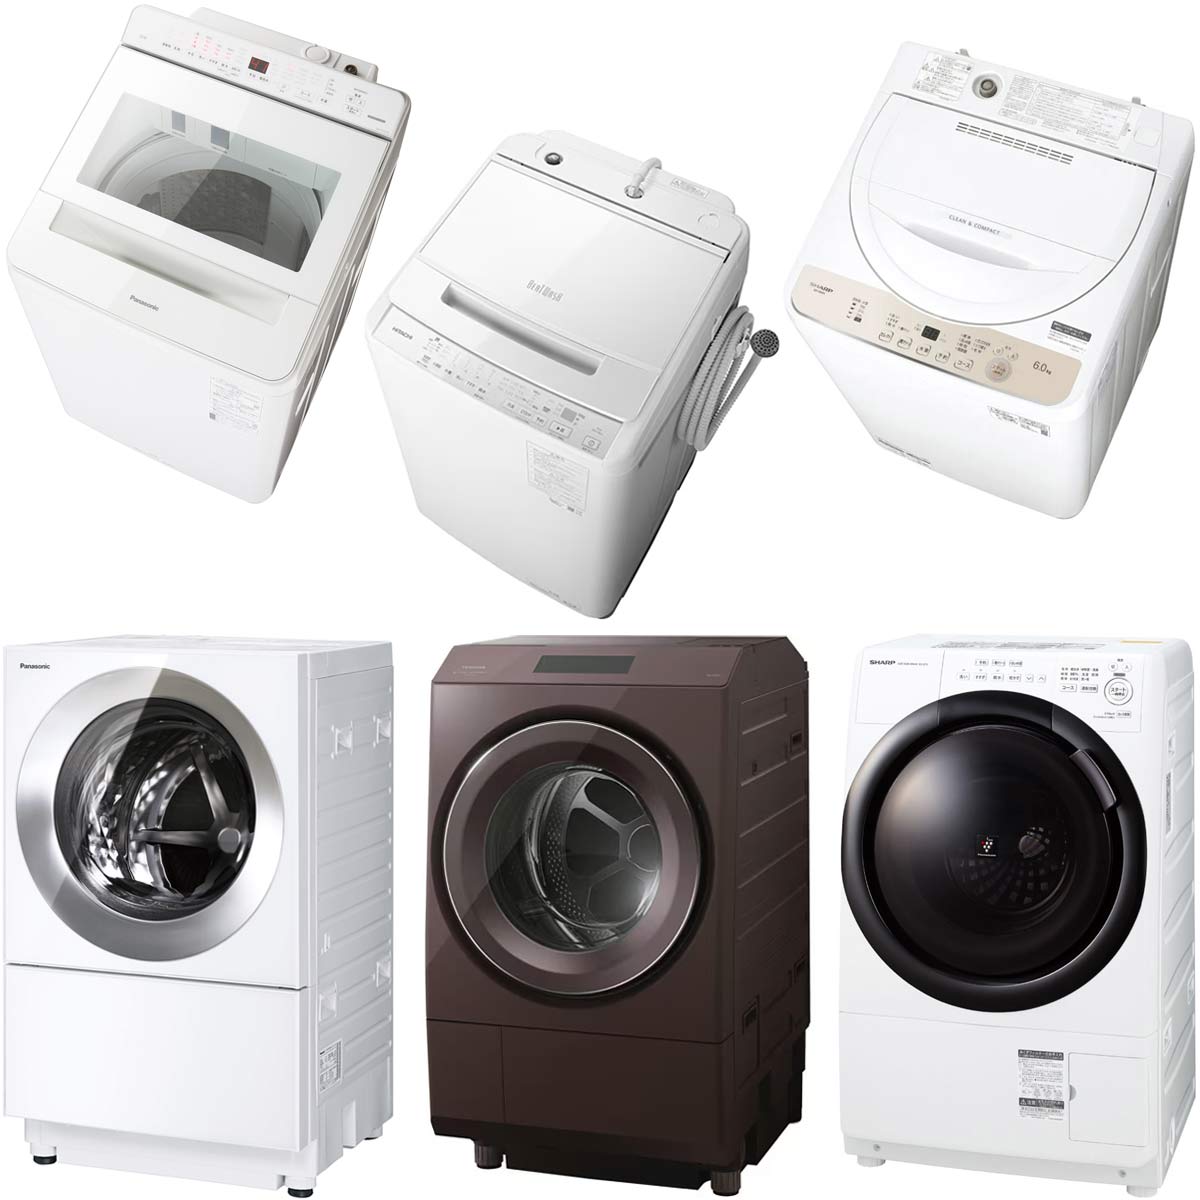 21年 洗濯機おすすめ11選 乾燥機能 洗浄力が強いドラム式 縦型の 買い はこれ 価格 Comマガジン